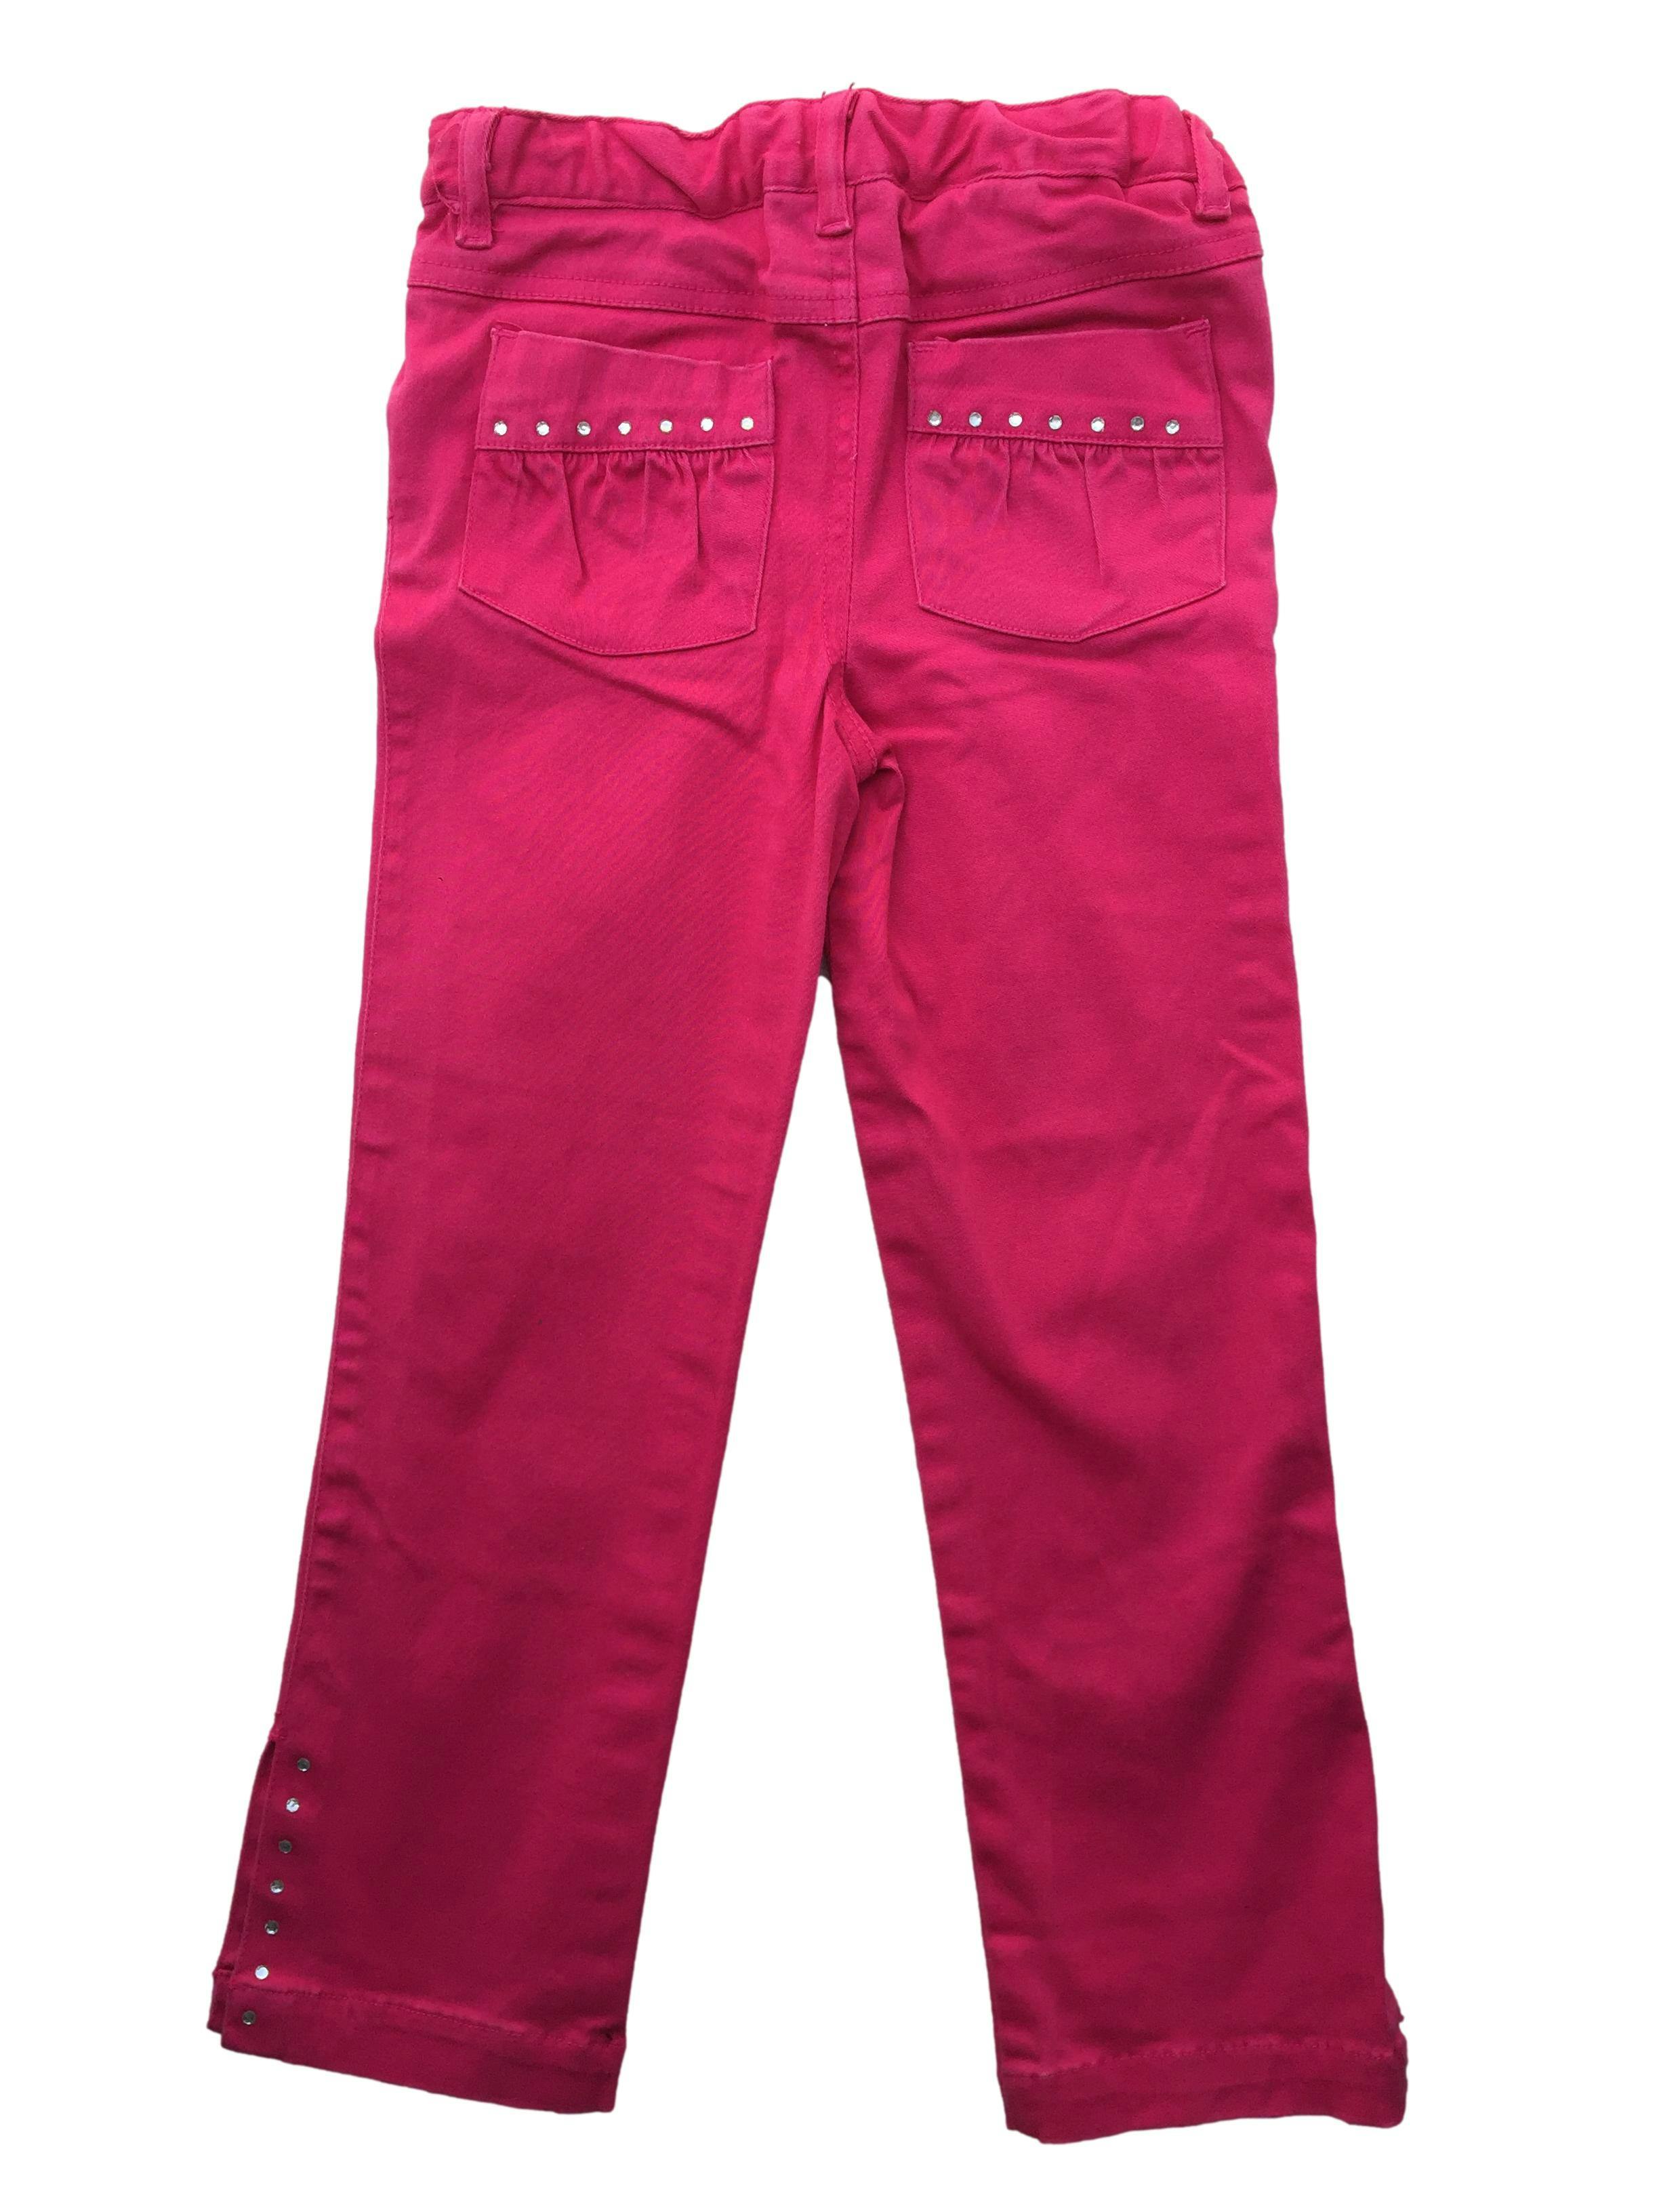 Pantalón Kids stuff fucsia, elástico interno regulable en la cintura, abertura en la basta y brillos. 